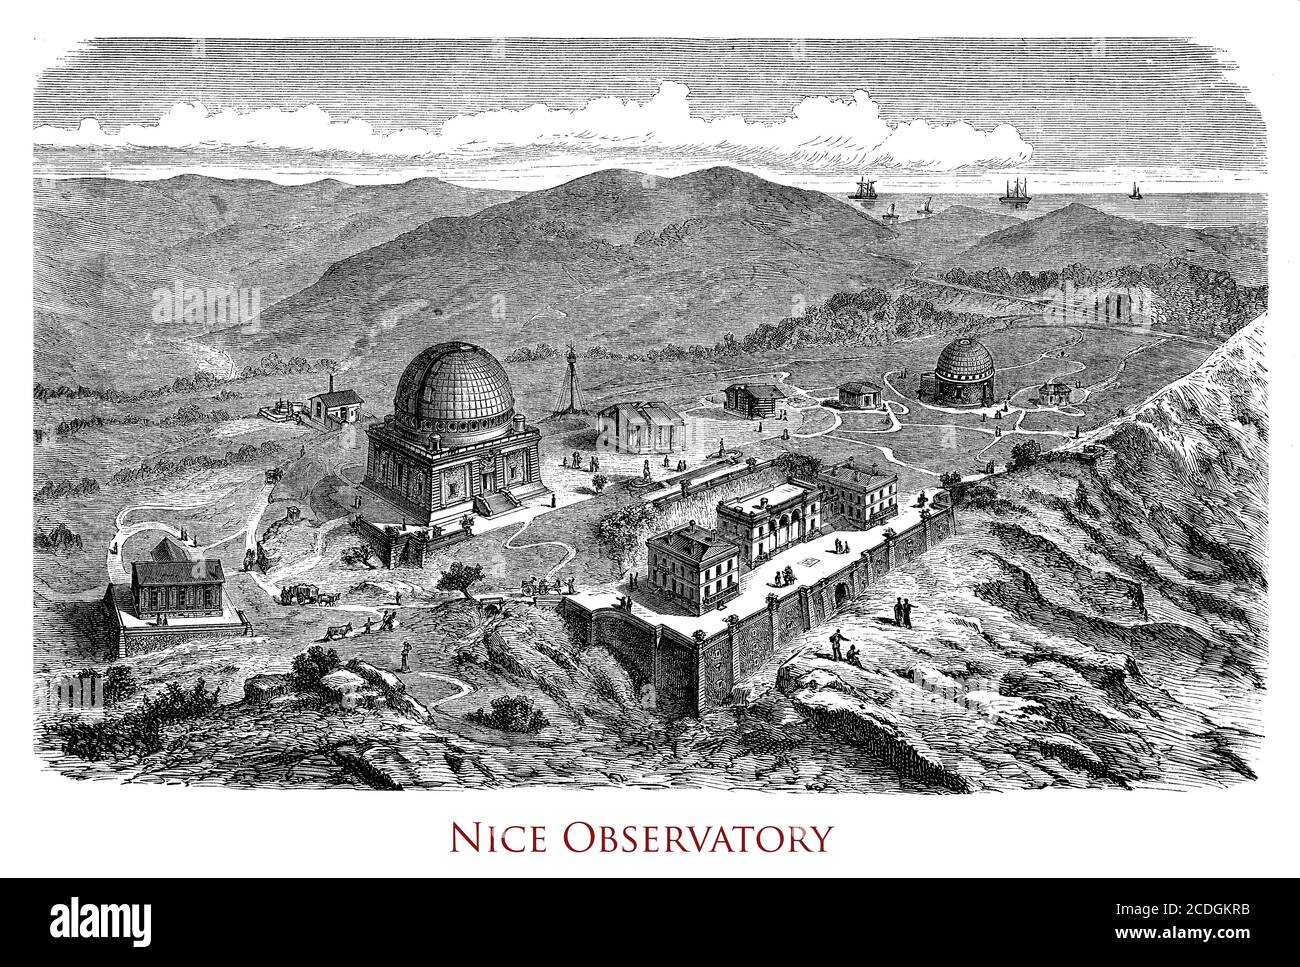 France, Observatoire astronomique de Nice au sommet du Mont gros, fondé en 1879, conçu par Charles Garnier, et Gustave Eiffel conçu le dôme principal. Banque D'Images